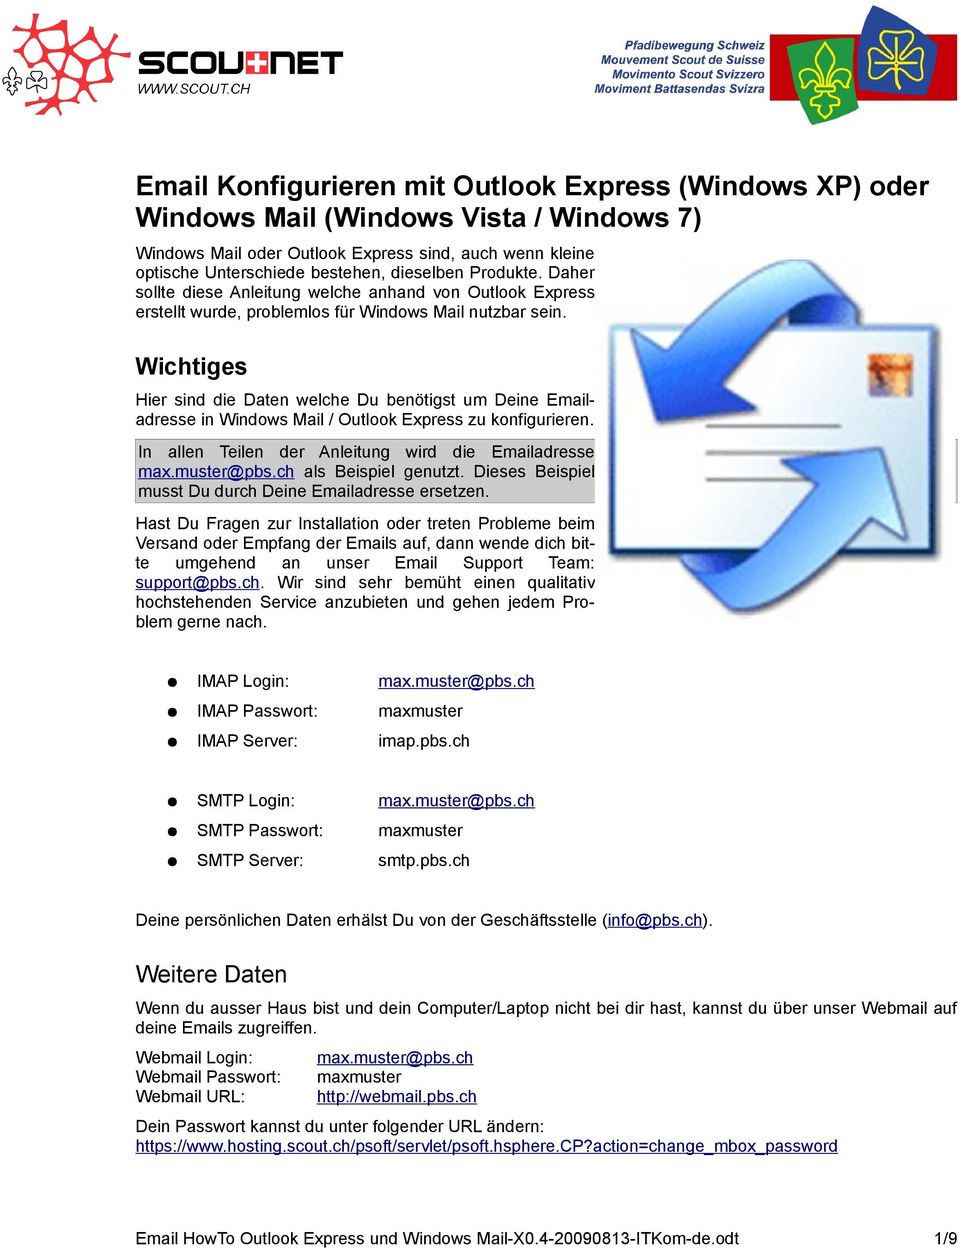 Wichtiges Hier sind die Daten welche Du benötigst um Deine Emailadresse in Windows Mail / Outlook Express zu konfigurieren. In allen Teilen der Anleitung wird die Emailadresse max.muster@pbs.